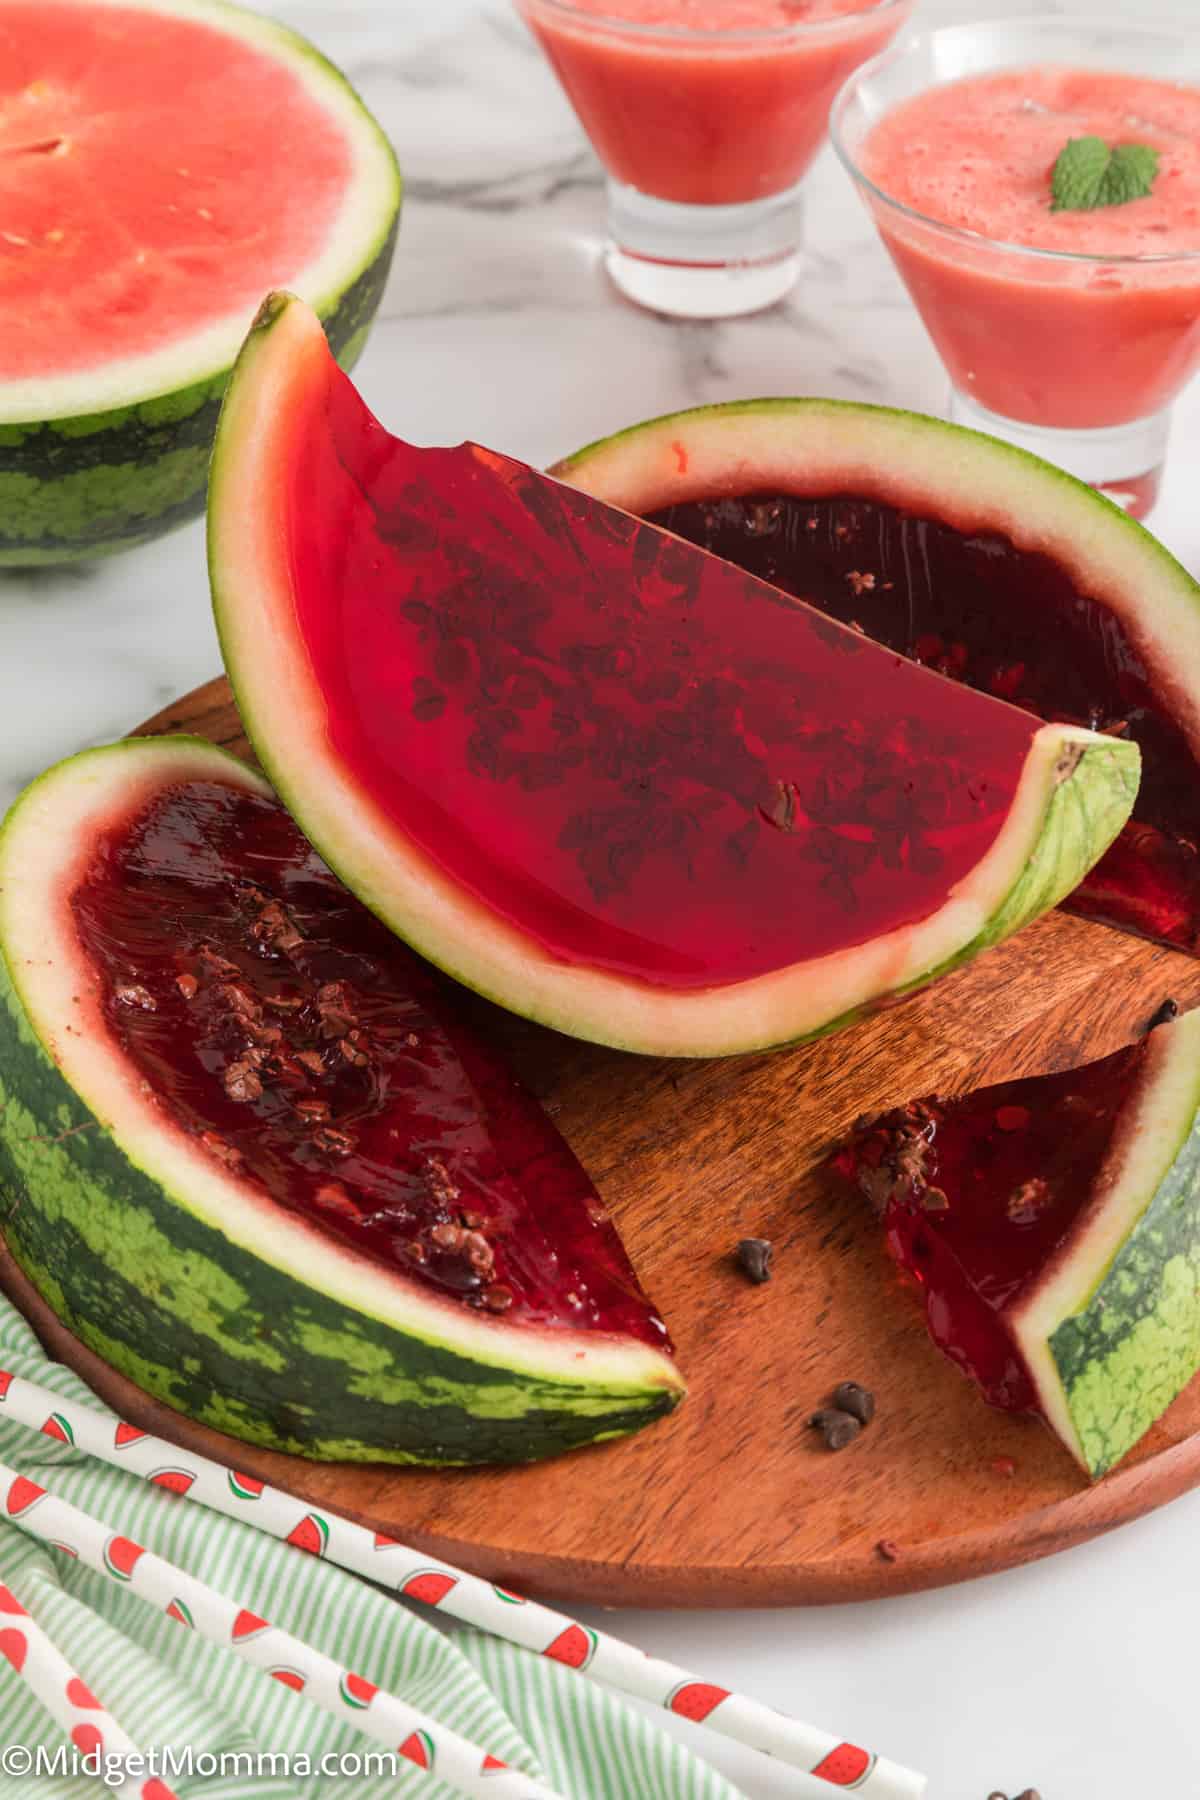 Easy Watermelon Slices Jello Shots Recipe